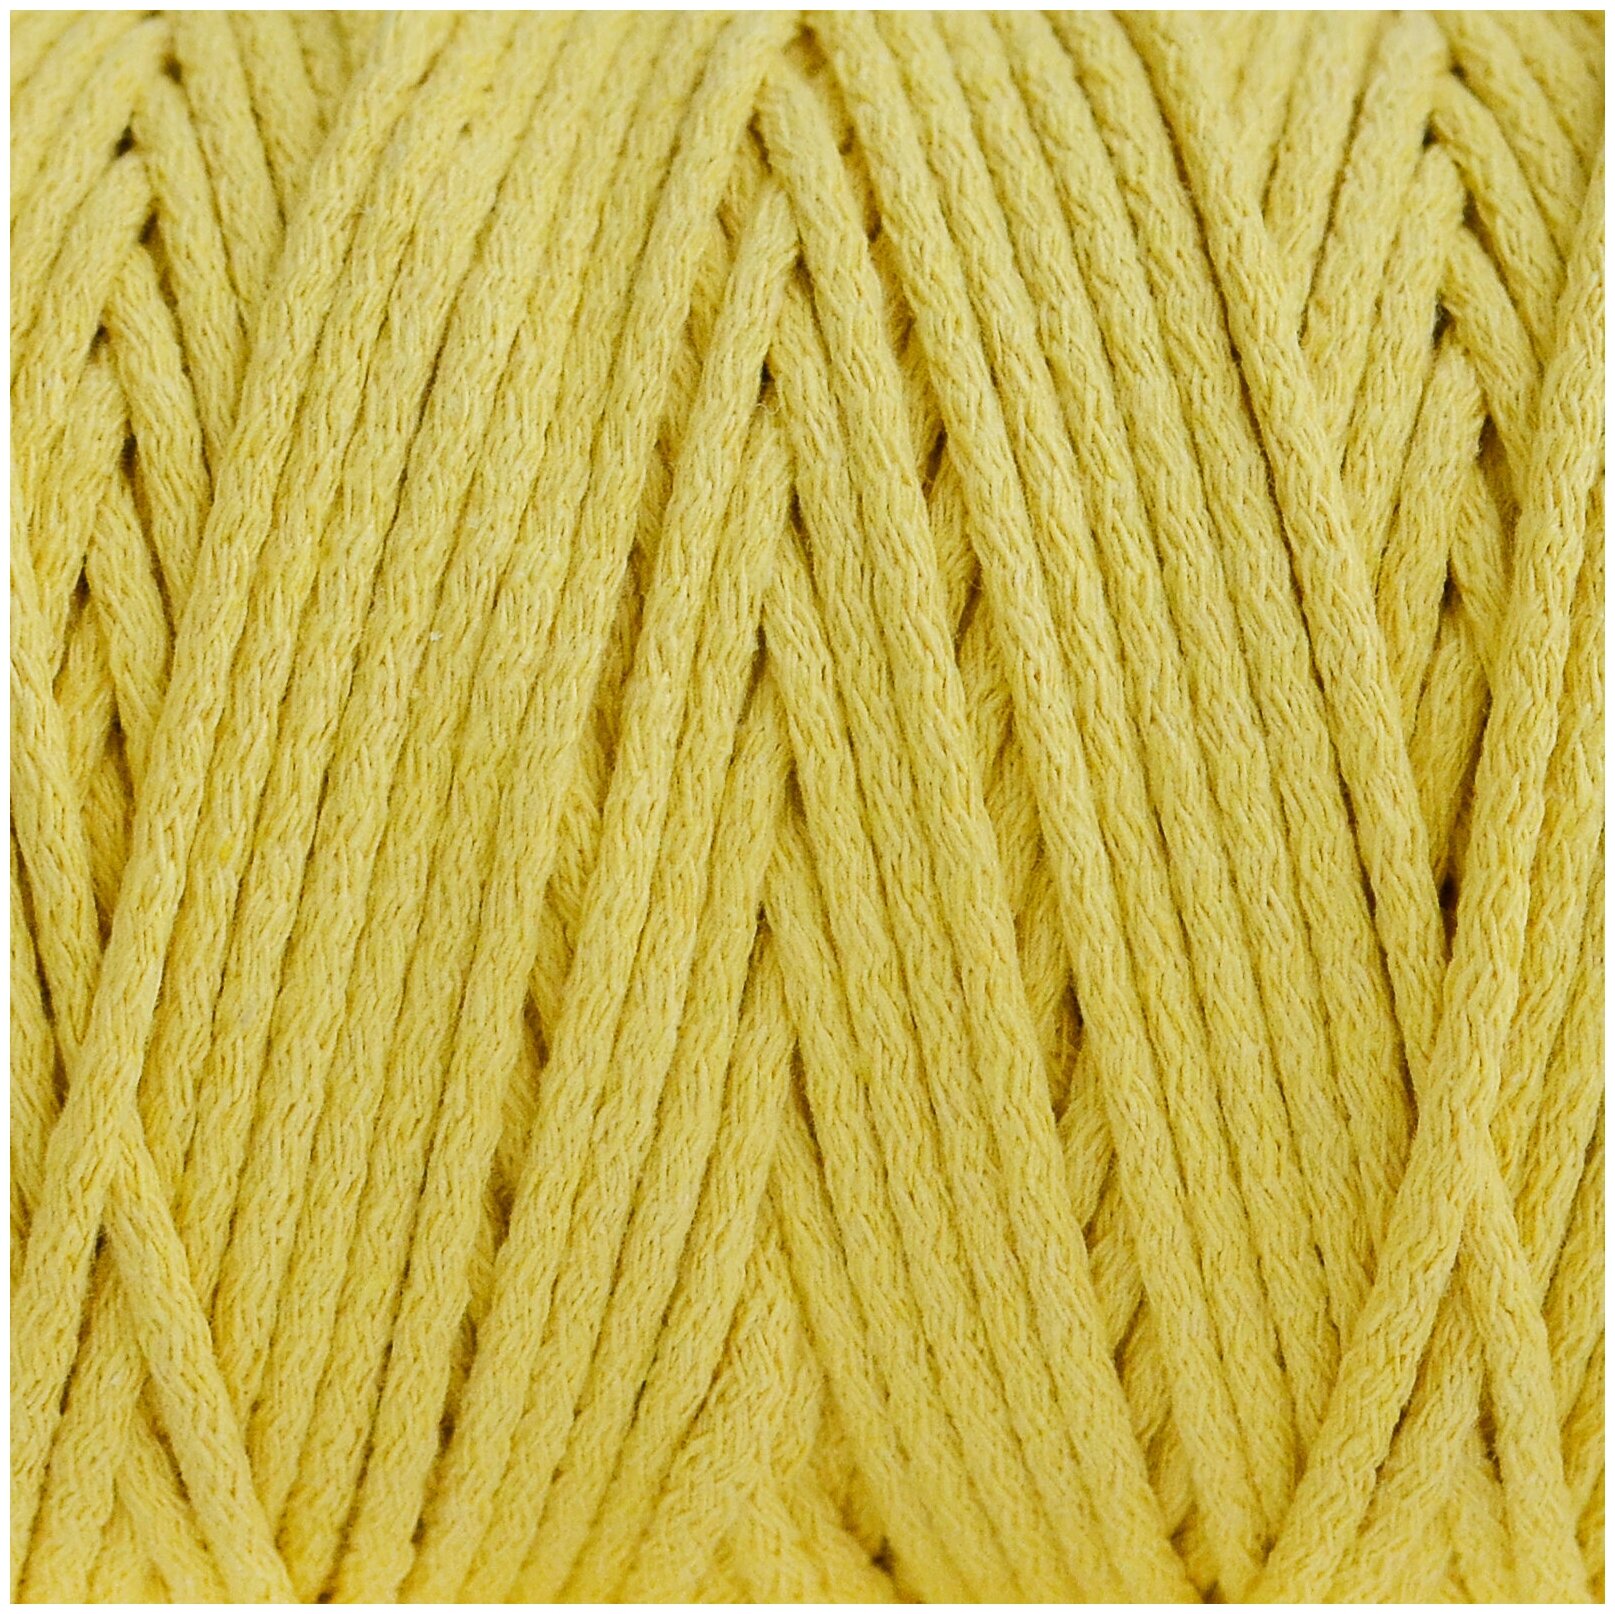 Шнур для рукоделия (вязания, макраме) Узелки из Питера 100% хлопок, 5 мм, 200 м, жёлтый